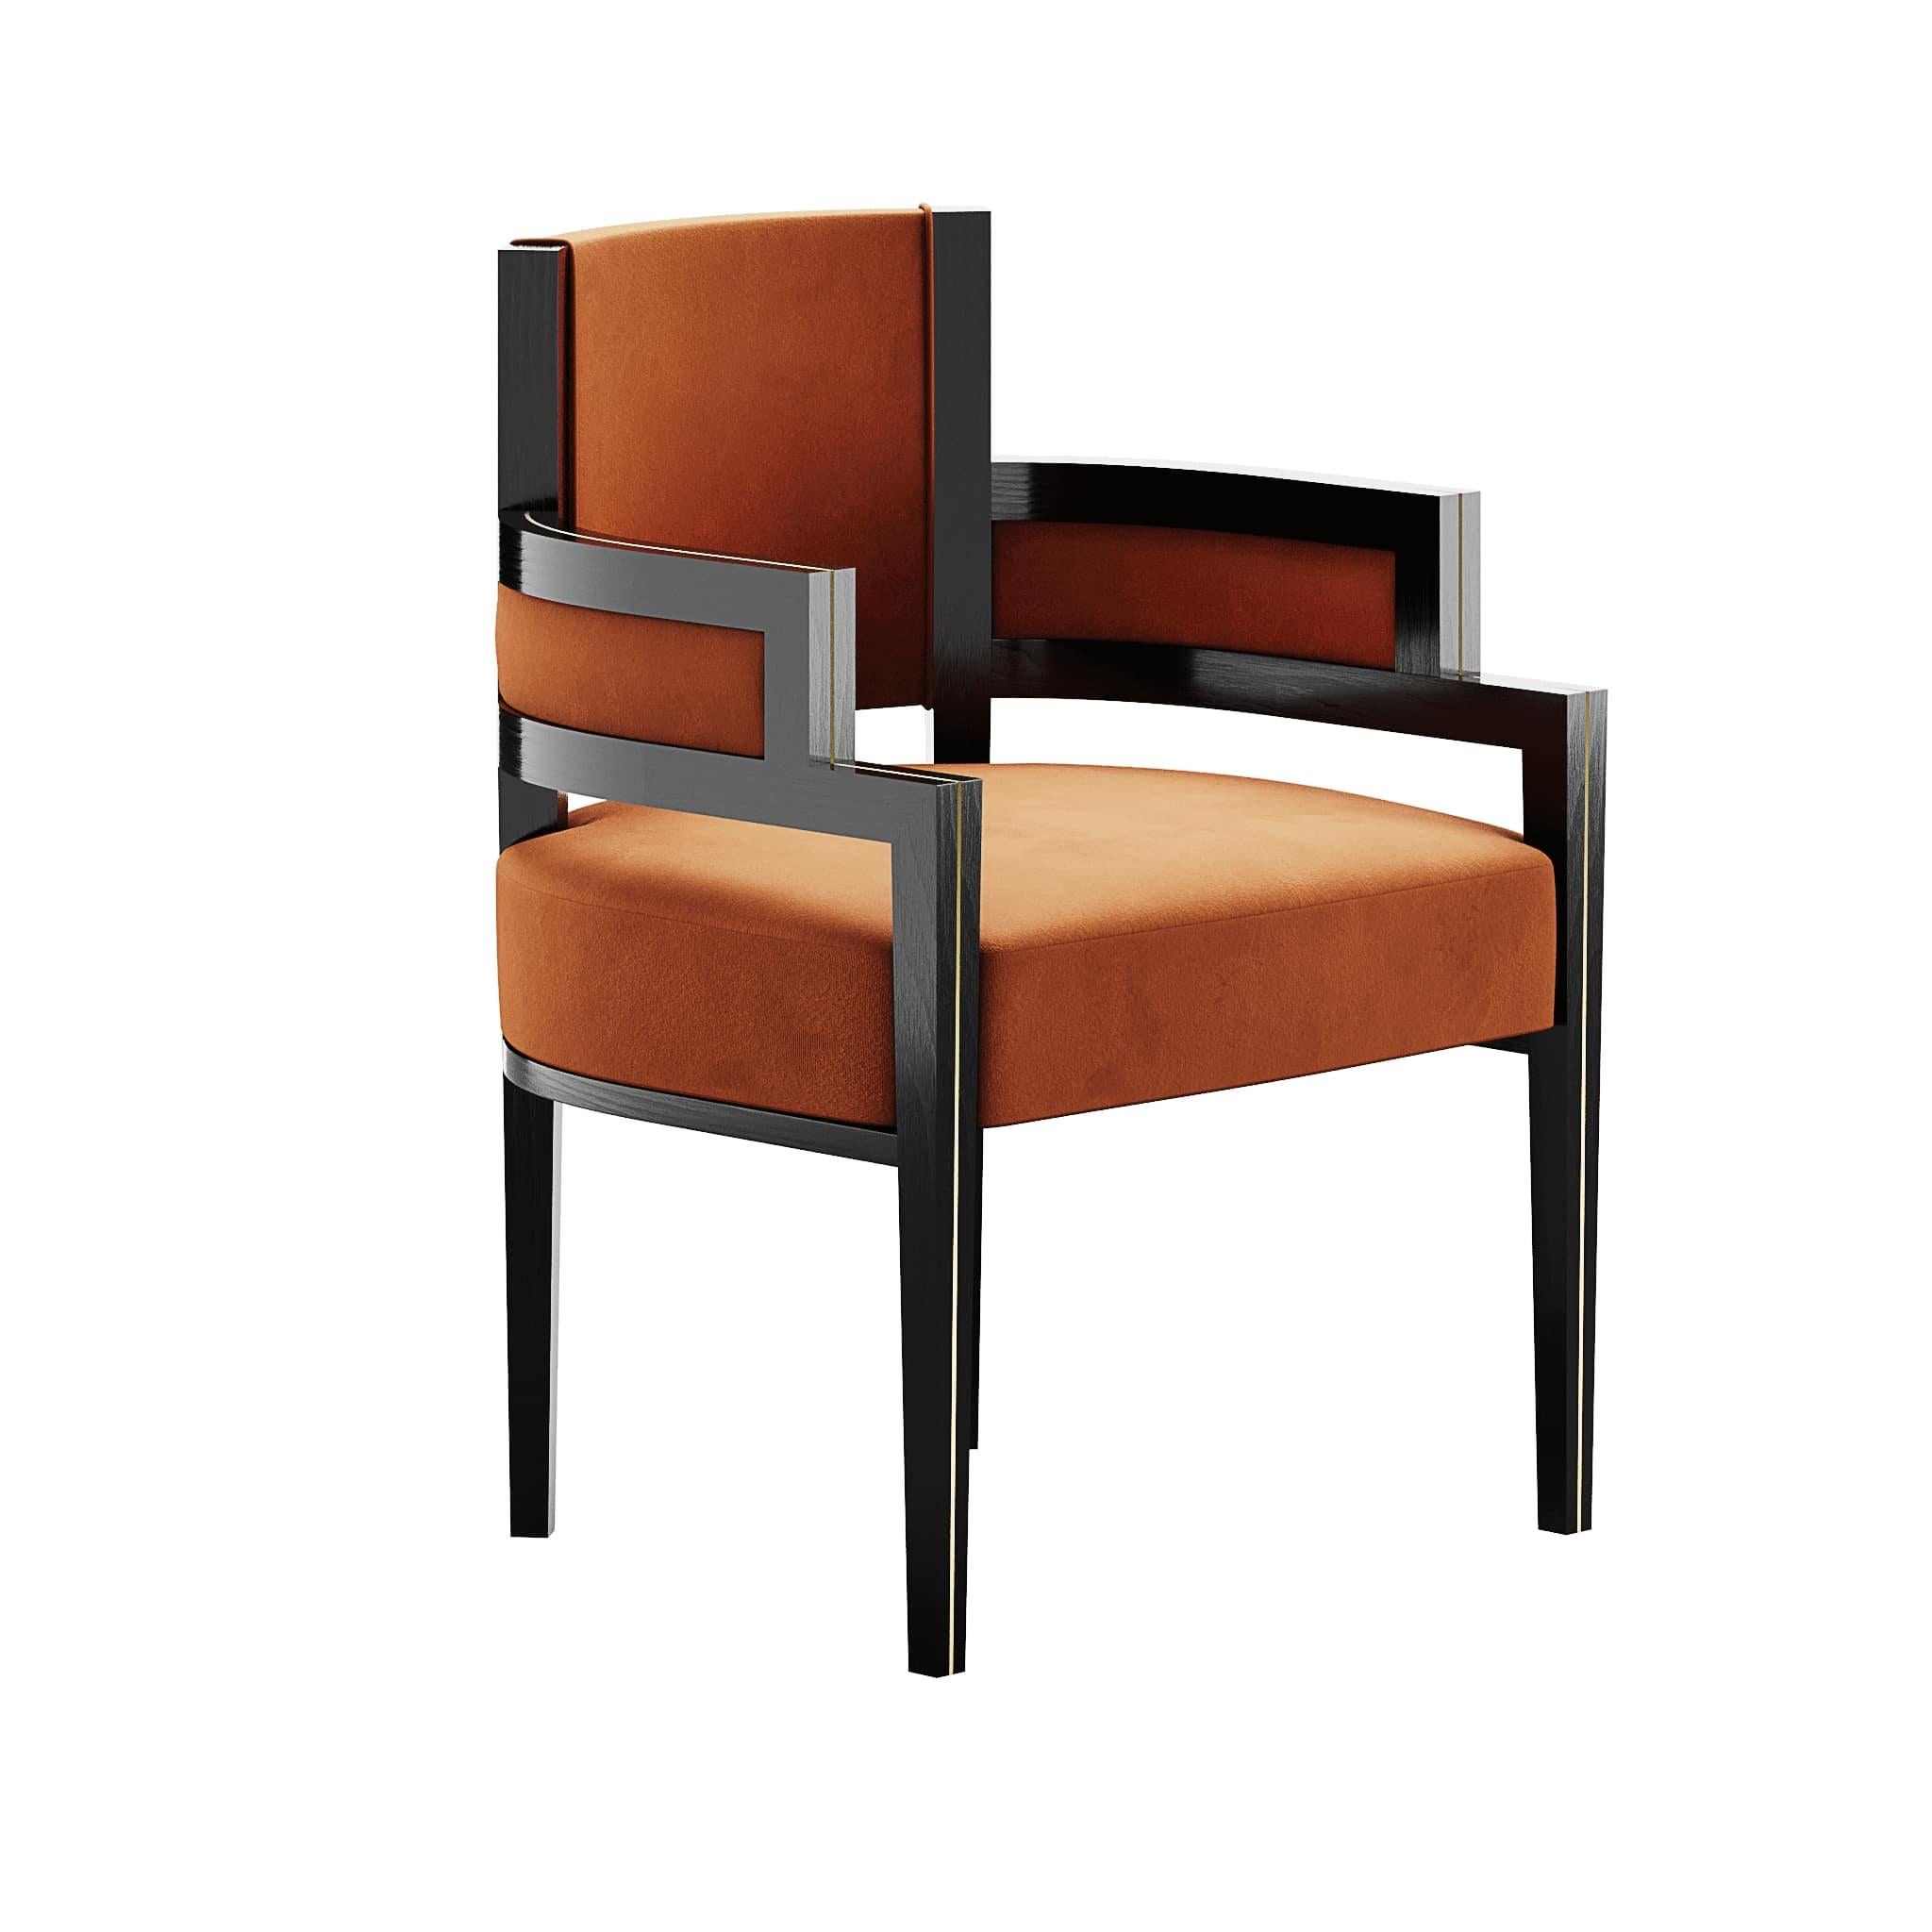 Pina Chair Iron est une chaise de salle à manger de style Art déco dont la forme offre le meilleur confort aux convives. Elle est recouverte d'un velours orange chaud et d'une structure en bois moderne. Parfait pour les projets de salle à manger